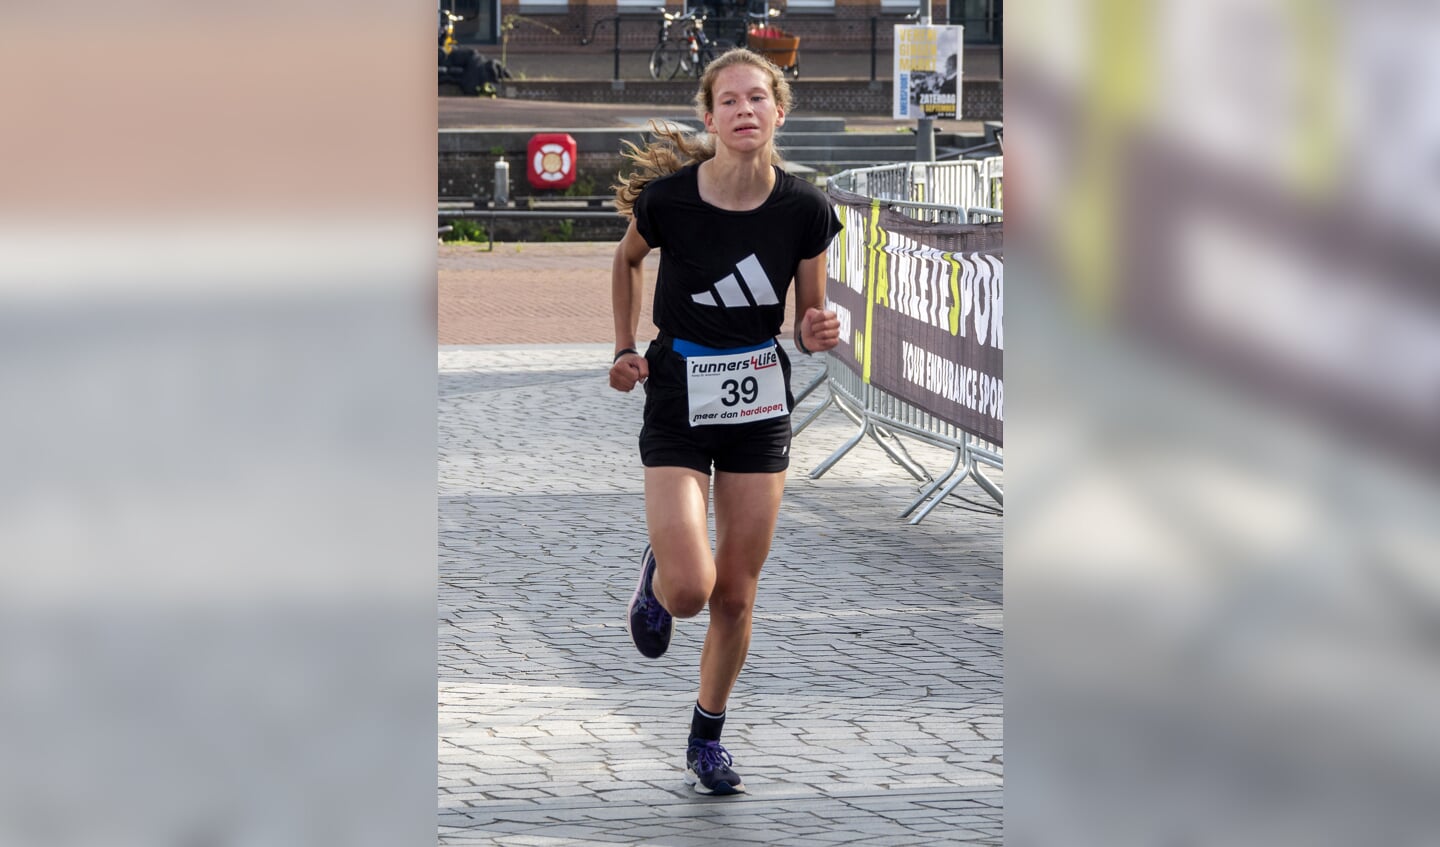 Keistad Triathlon
run-bike-run
Winnares meisjes: Nienke Meesters